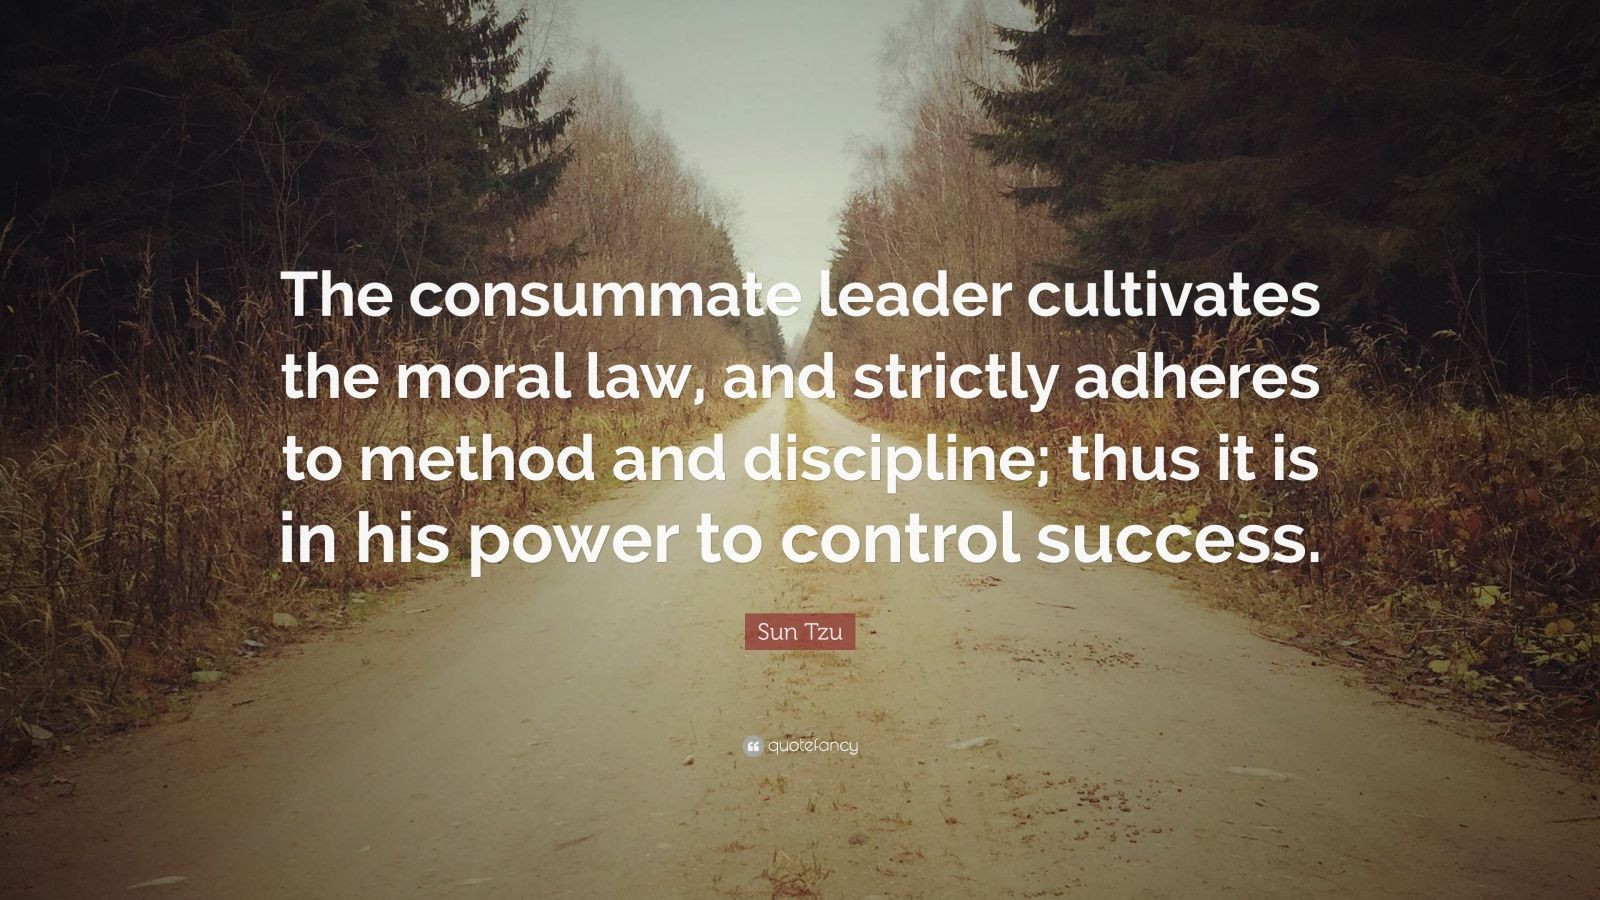 Sun Tzu Quotes Leadership
 Sun Tzu Quote “The consummate leader cultivates the moral